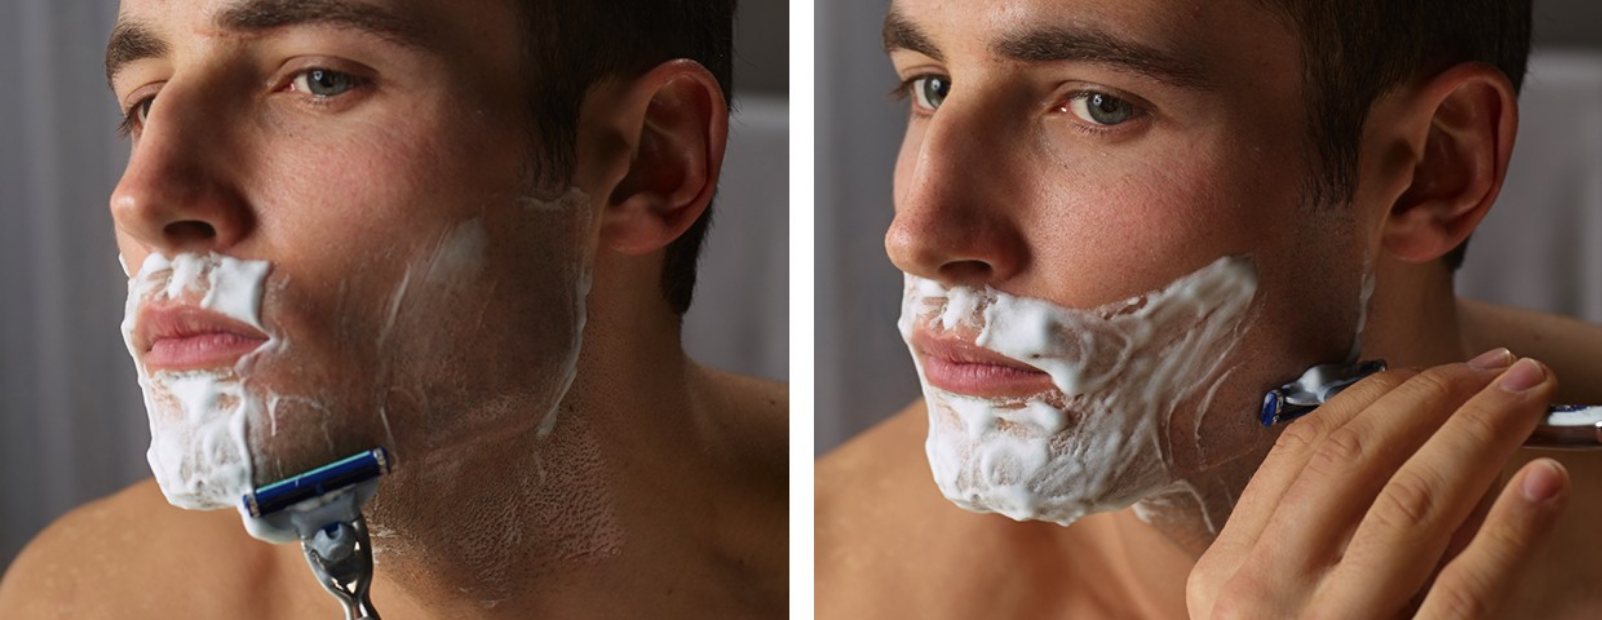 Può essere utile l'applicazione del gel o della schiuma da barba prima della rasatura controcorrente